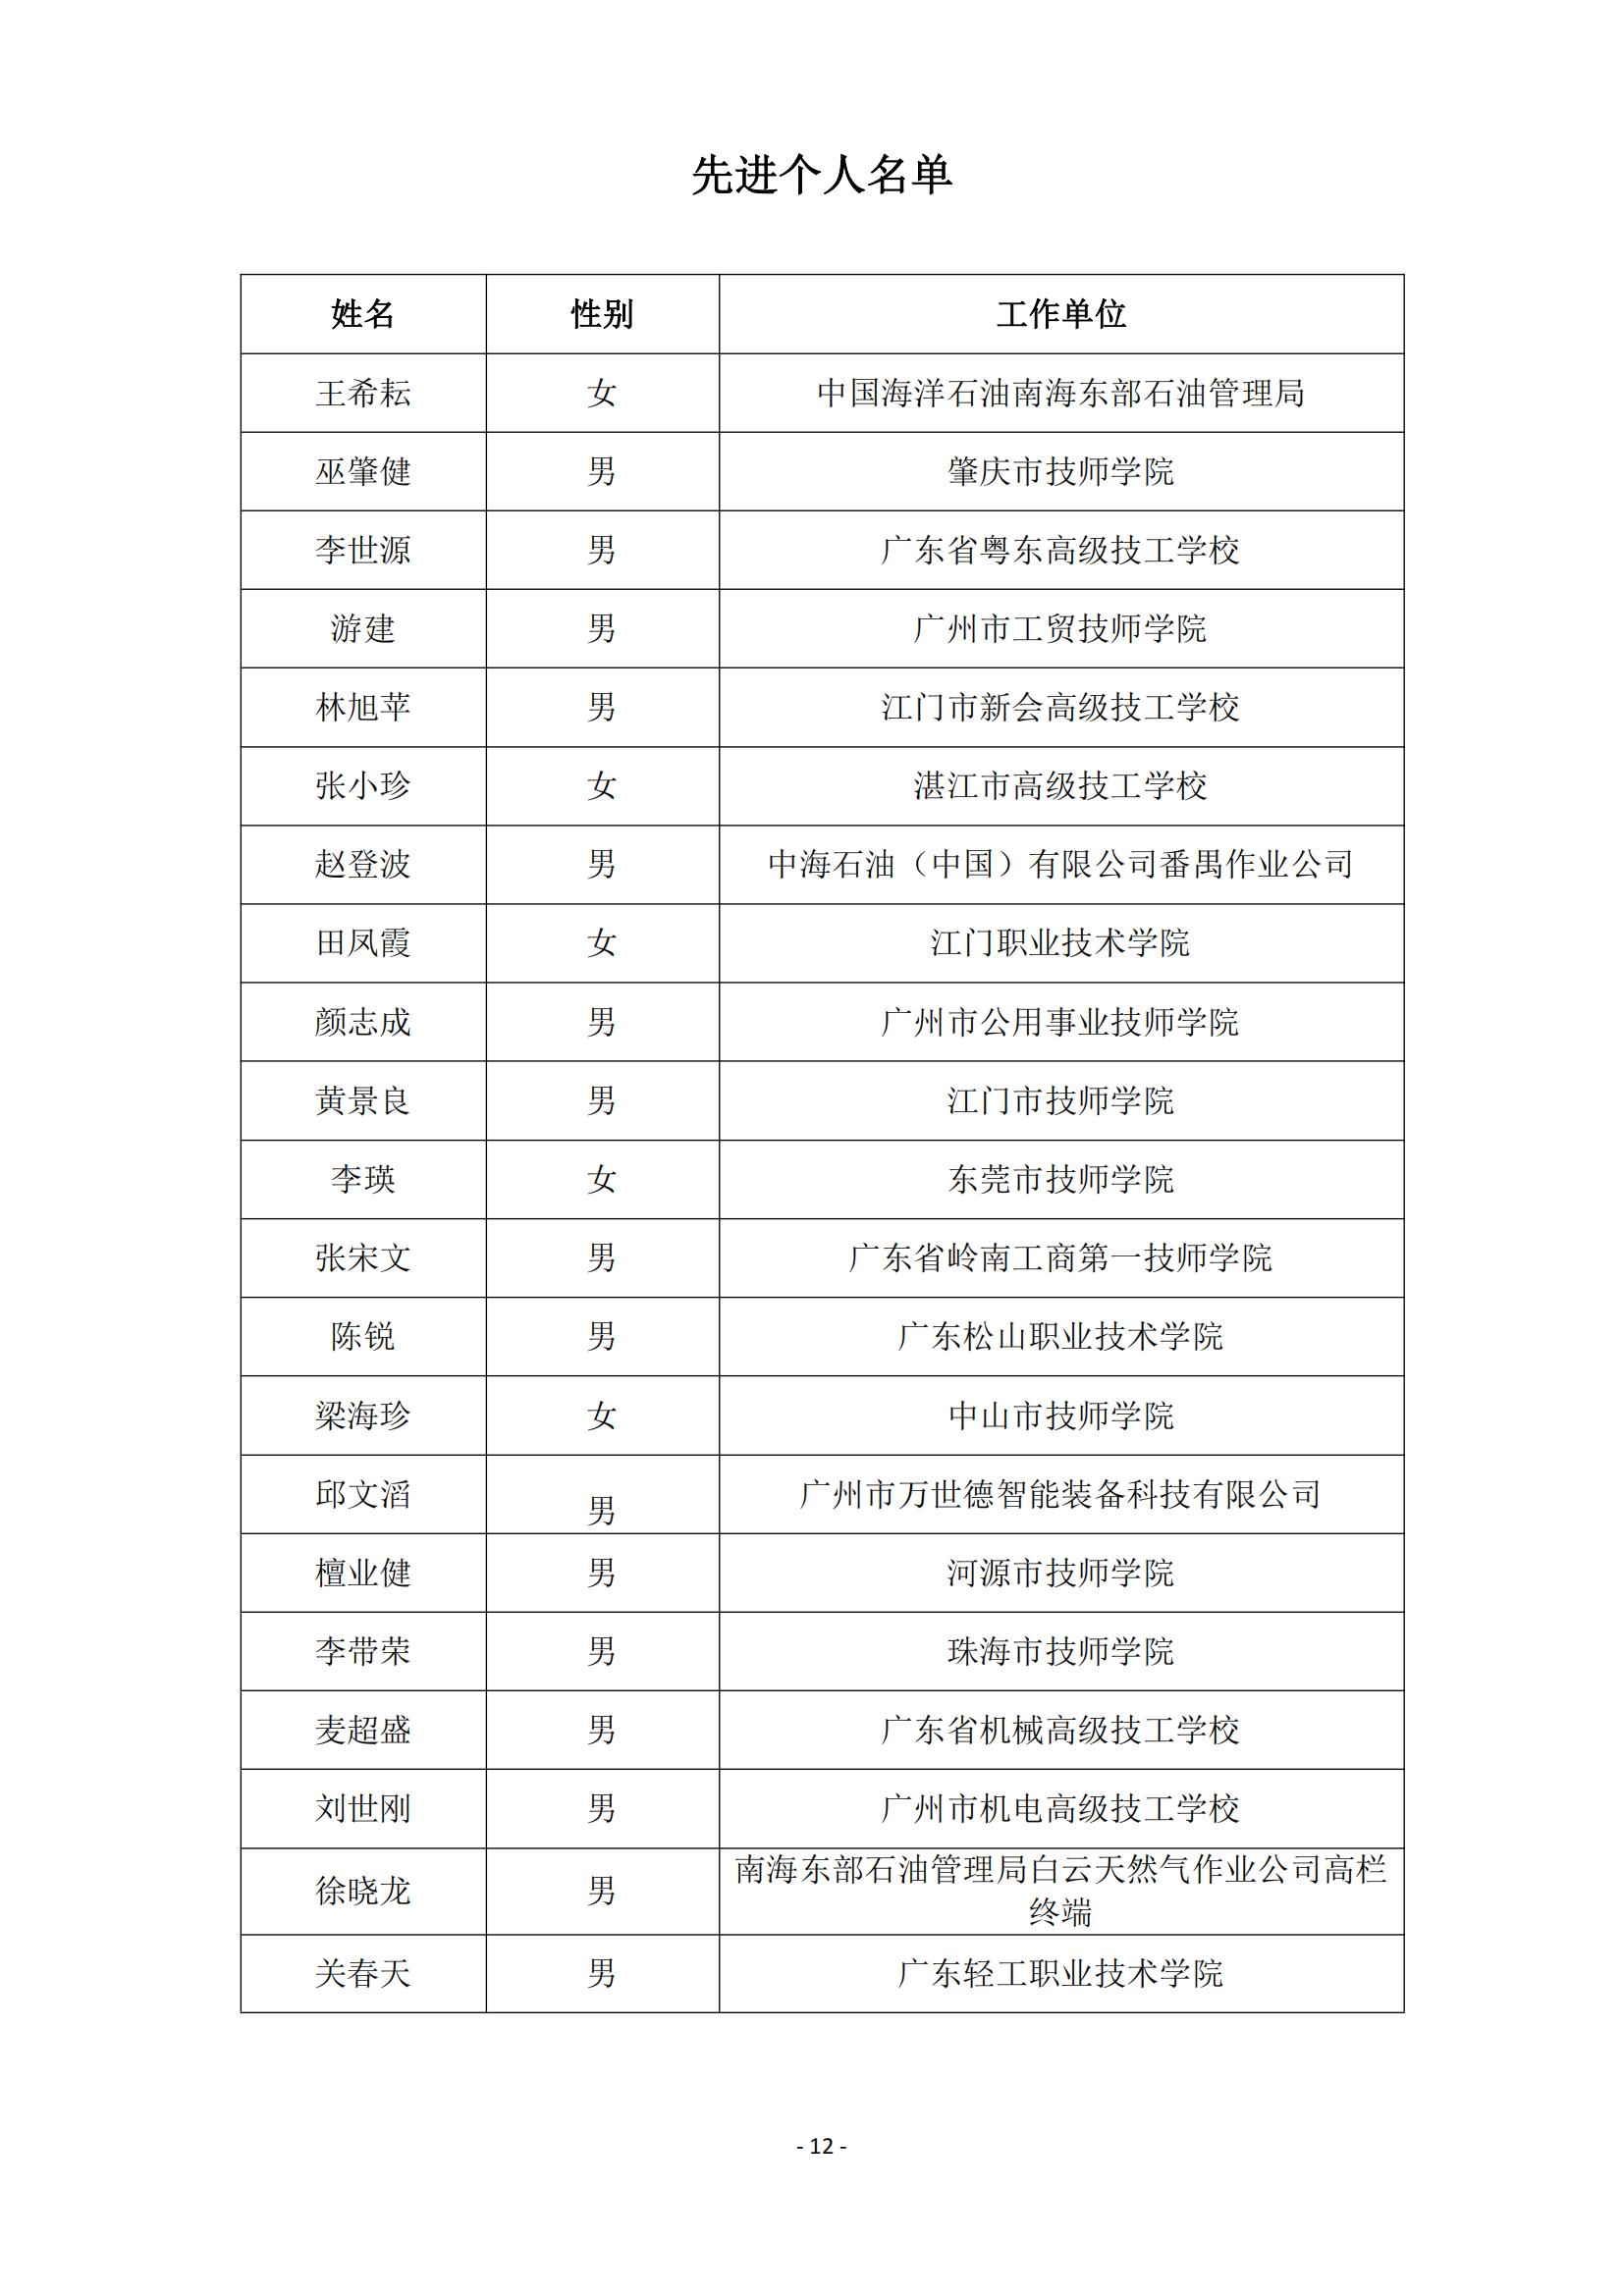 2015 年中国技能大赛--广东省机电一体化职业技能竞赛_11.jpg